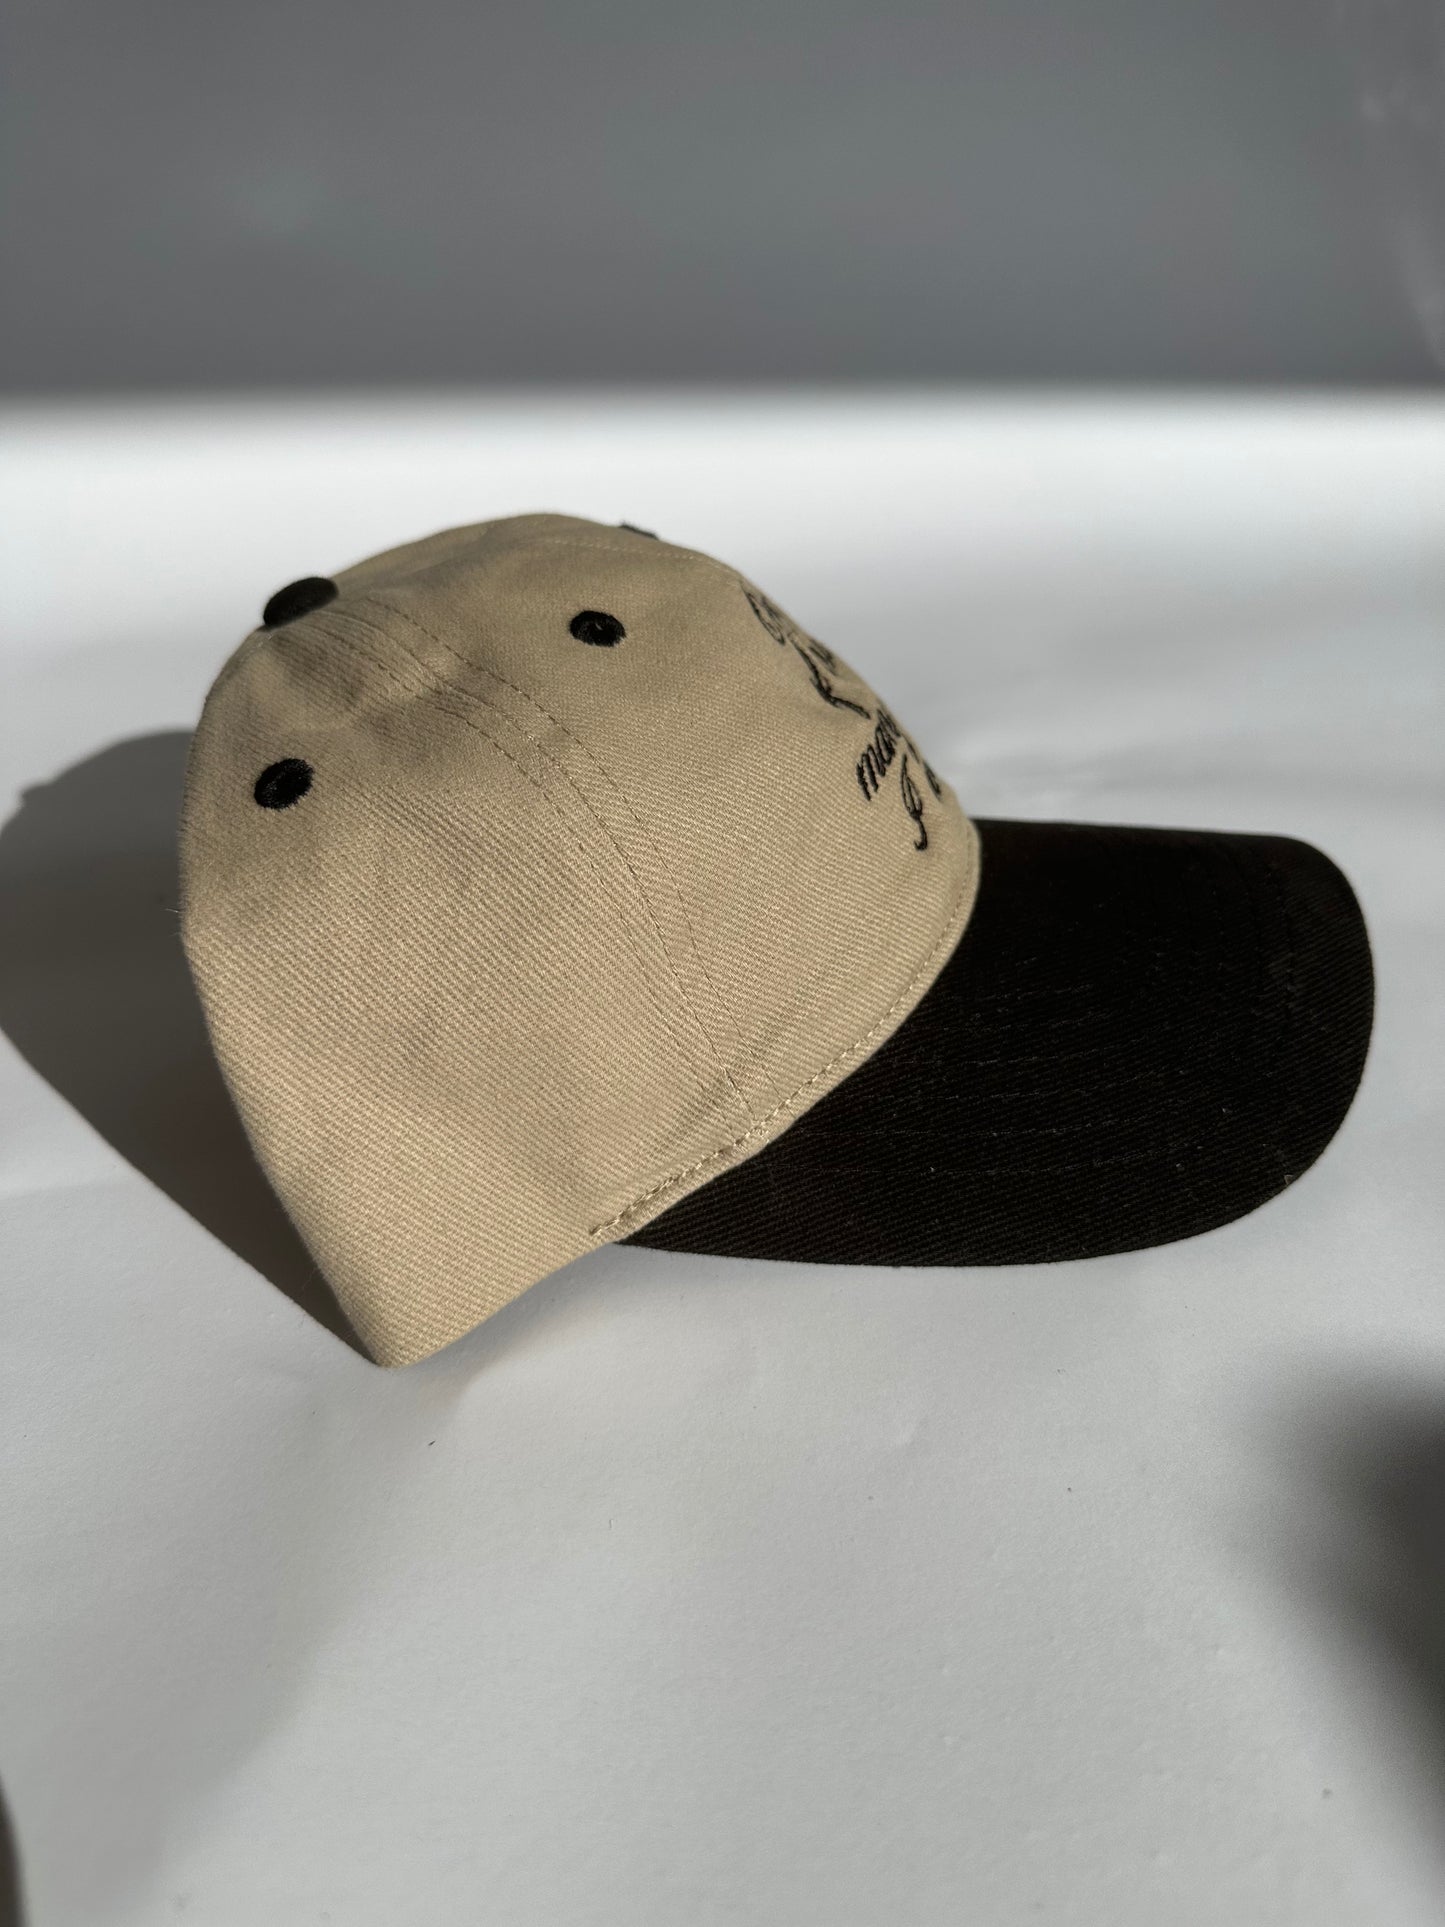 ‘One of the many hats I wear’ Baseball Cap